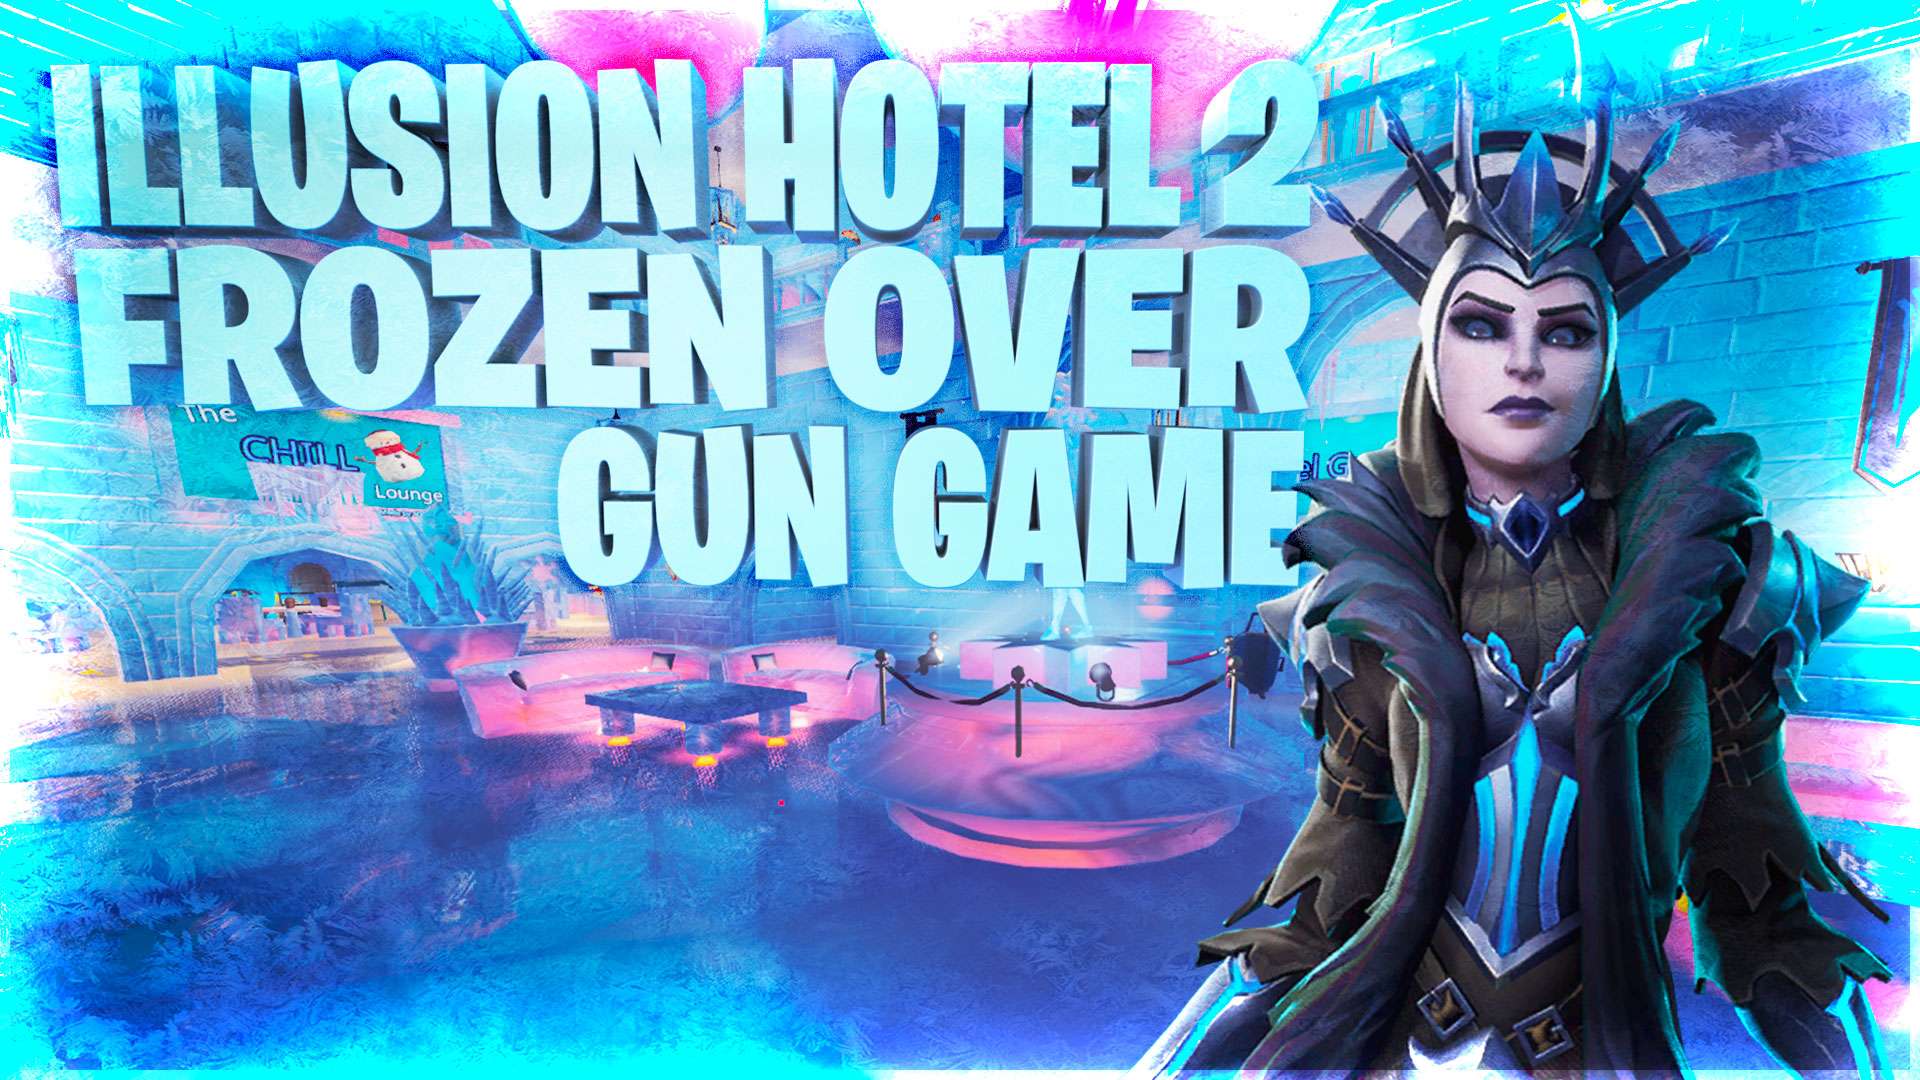 ILLUSION HOTEL 2: FROZEN OVER GUN GAME